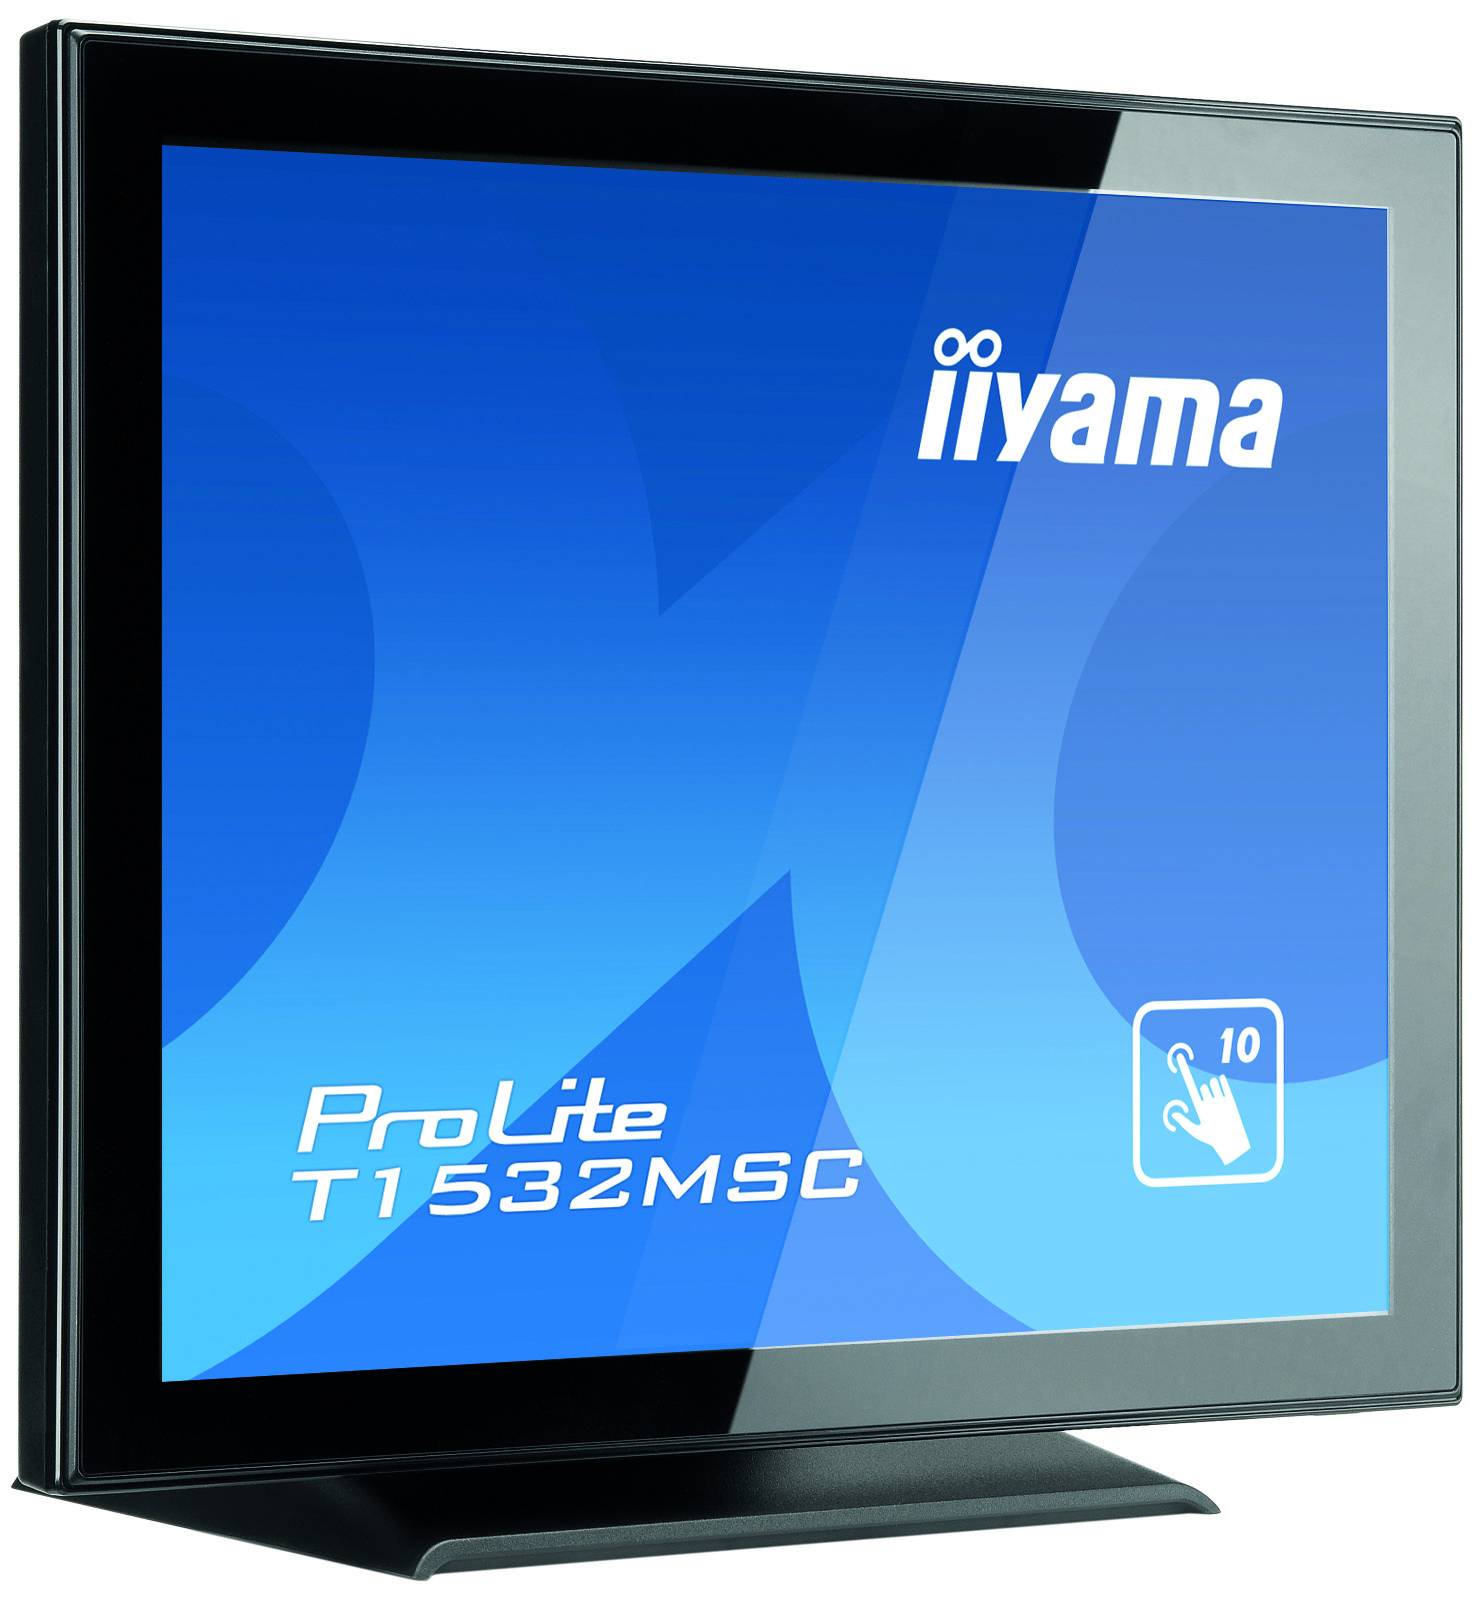 Rca Informatique - image du produit : T1532MSC-B5AG 700:1 8MS BLACK 15IN LCD-TOUCH 1024 X 768 4:3